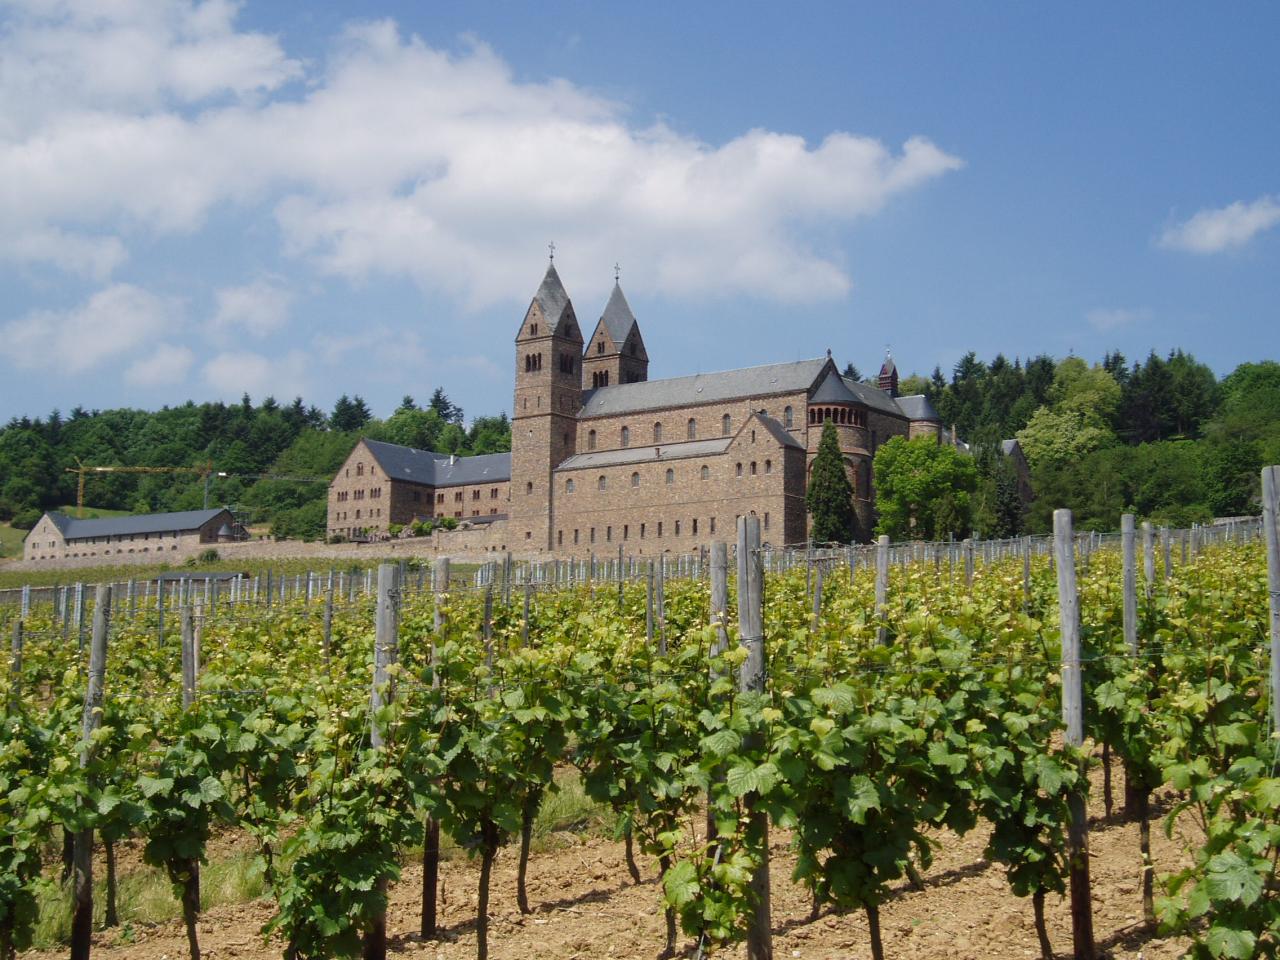 Die Wein-Walks starten im Weinberg des Herrn  / Die Abtei ragt aus den Weinbergen empor.